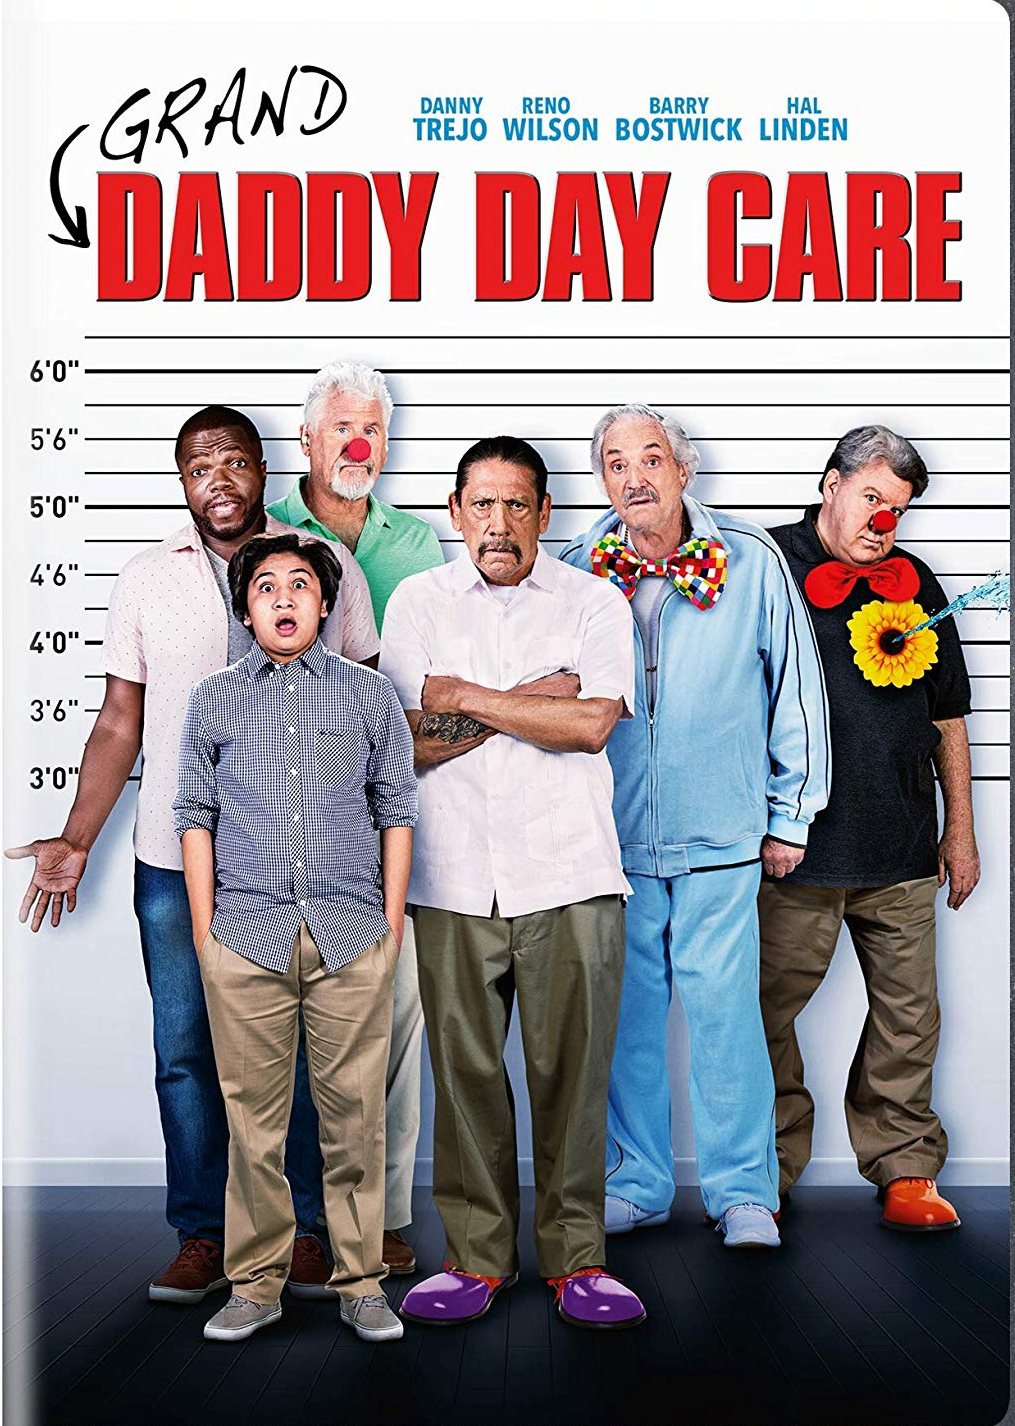 Xem Phim Bố mở nhà trẻ - Daddy Day Care - online truc tuyen vietsub mien phi hinh anh 1